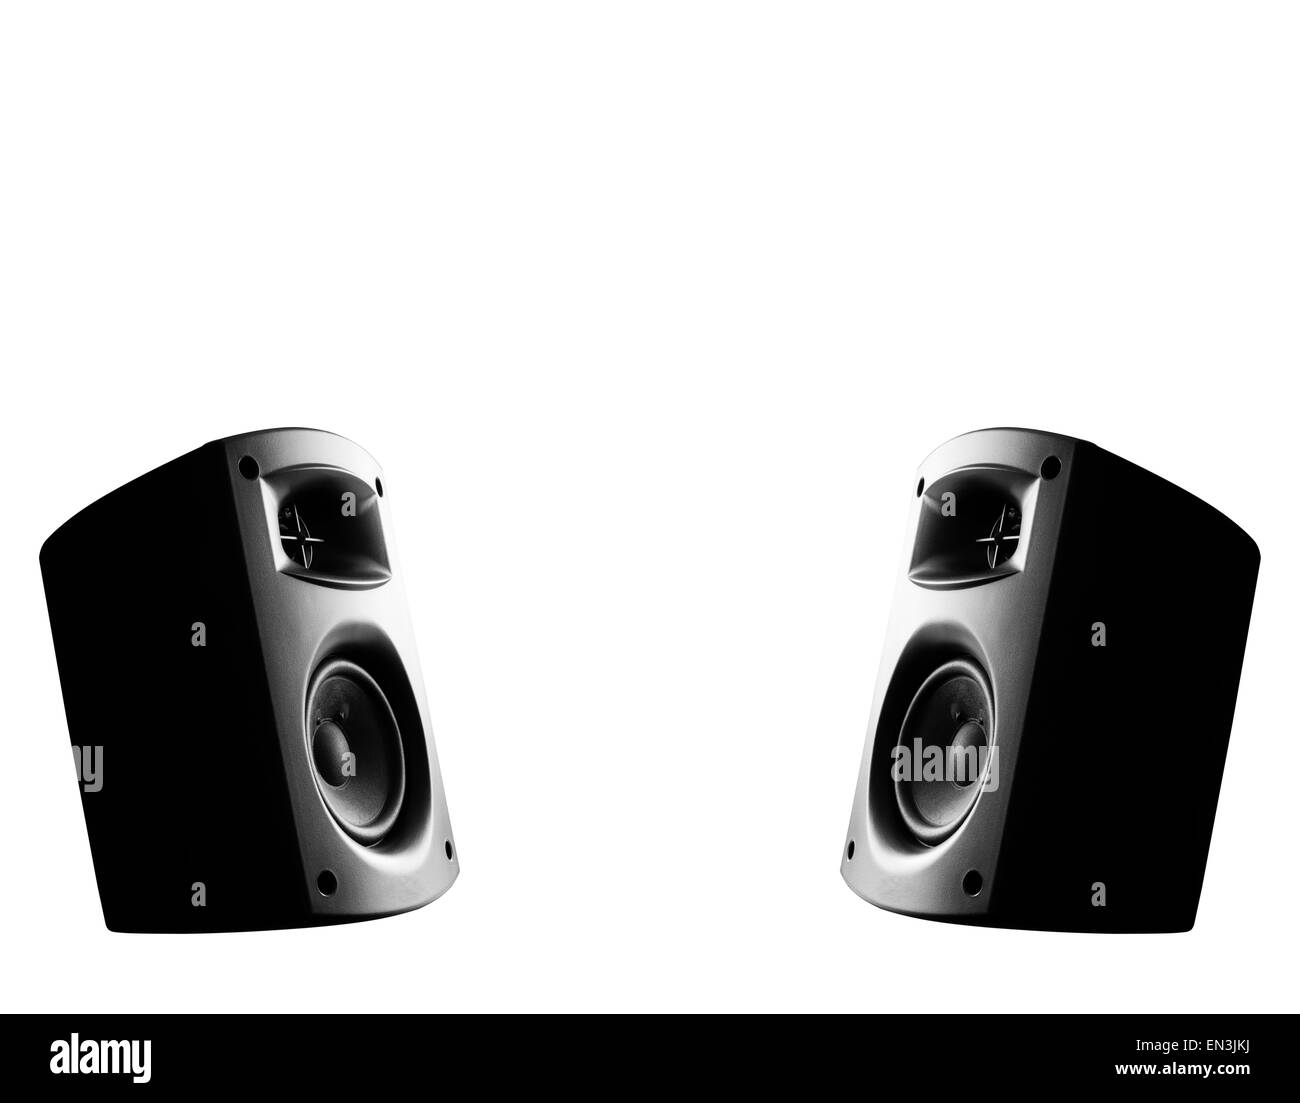 Stereo music speakers Stock Photo